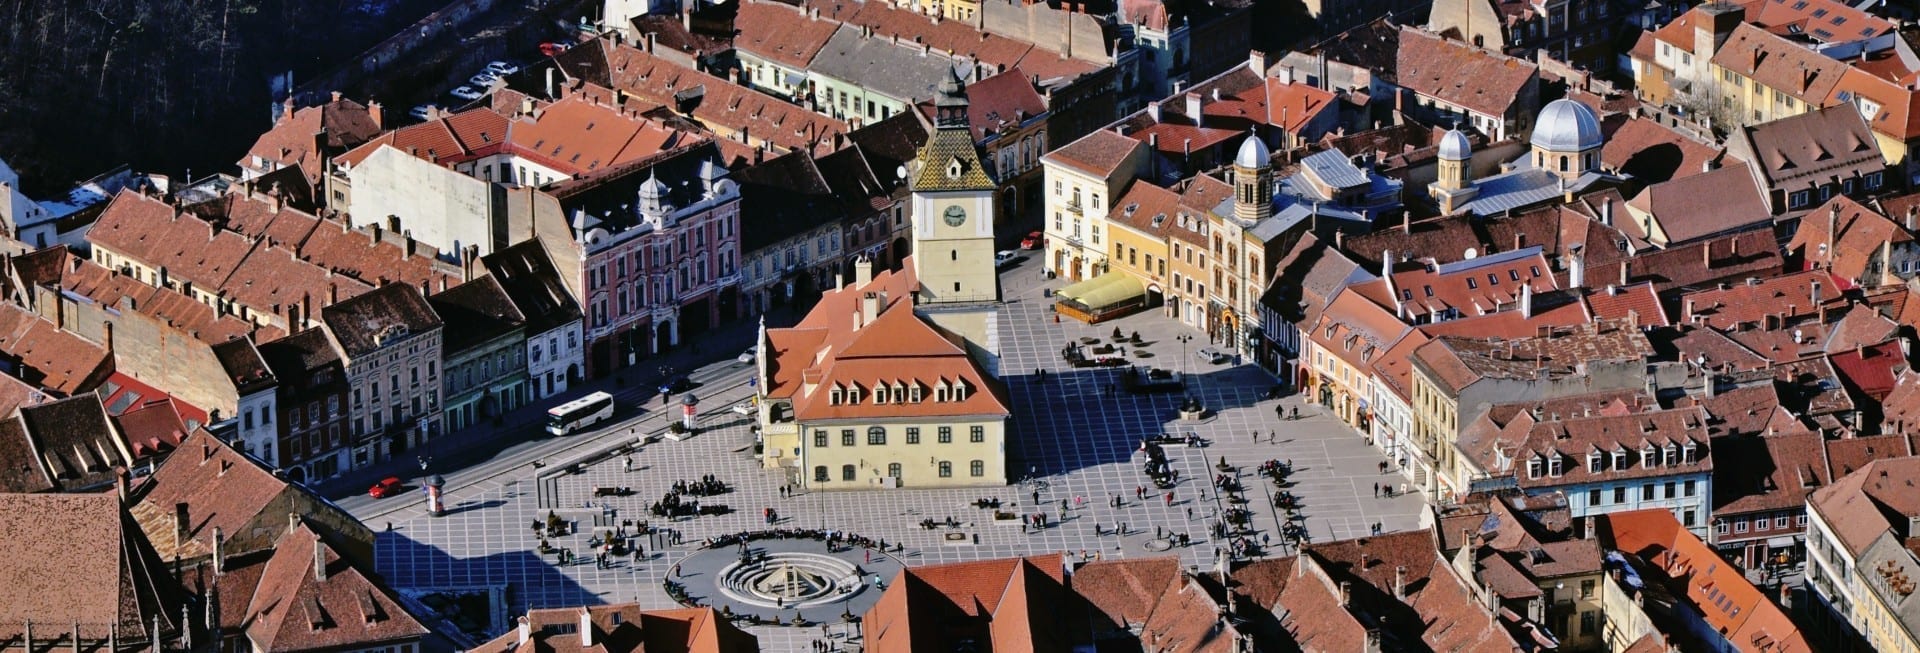 Plaza del Consejo (Piața Sfatului) Brasov Rumania